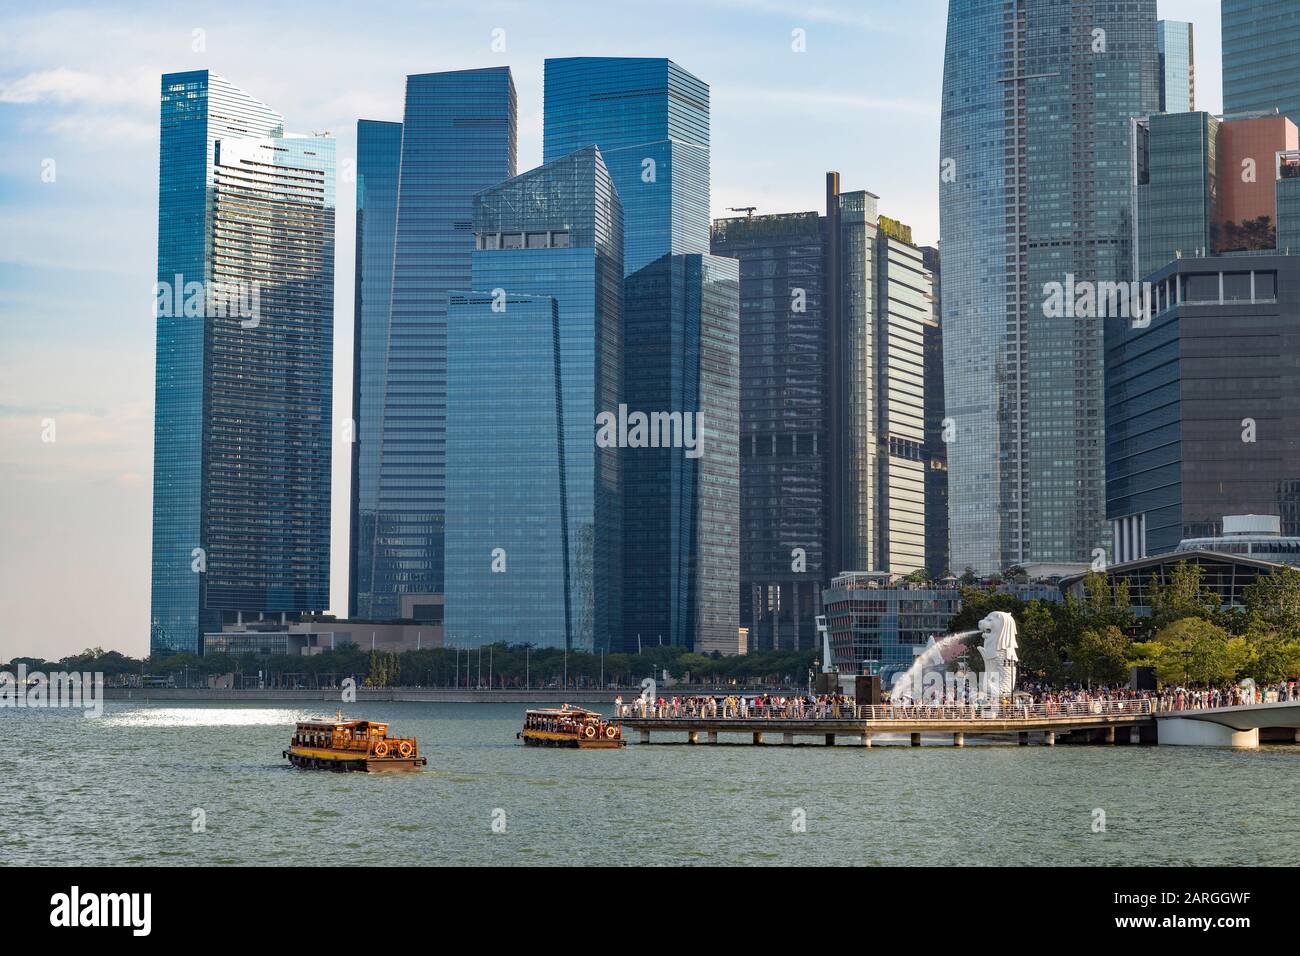 Bateaux touristiques avec la statue du Merlion et les gratte-ciel de Marina Bay, Singapour, Asie du Sud-est, Asie Banque D'Images